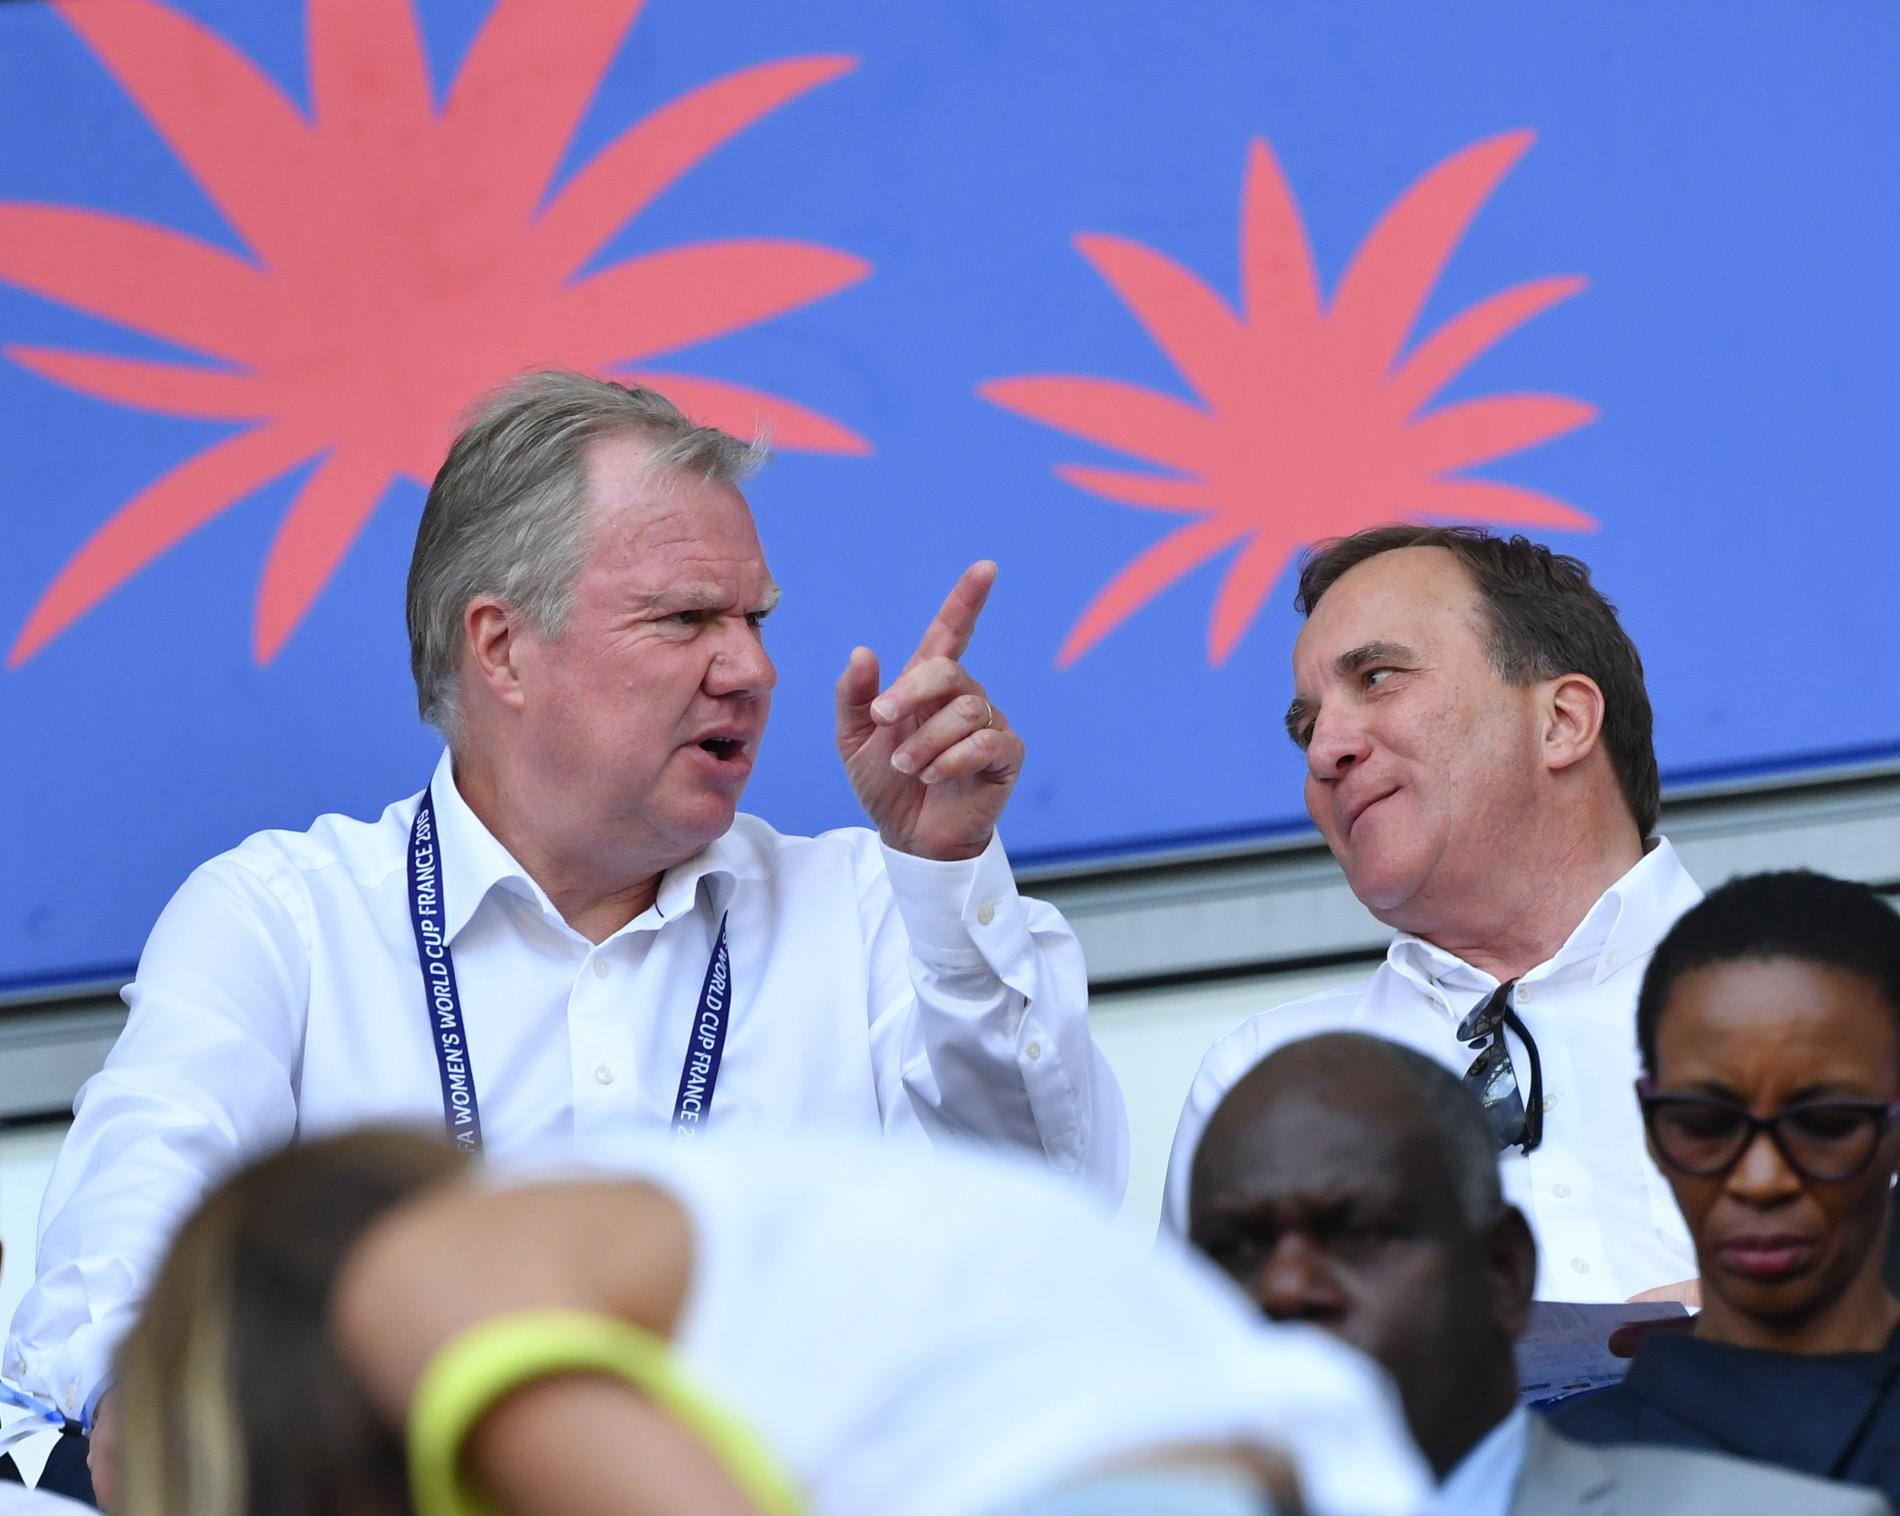 Svenska fotbollförbundets ordförande Karl-Erik Nilsson och statsminister Stefan Löfven under fotbolls-VM 2019. Nu har de mötts igen för att diskutera fotboll.